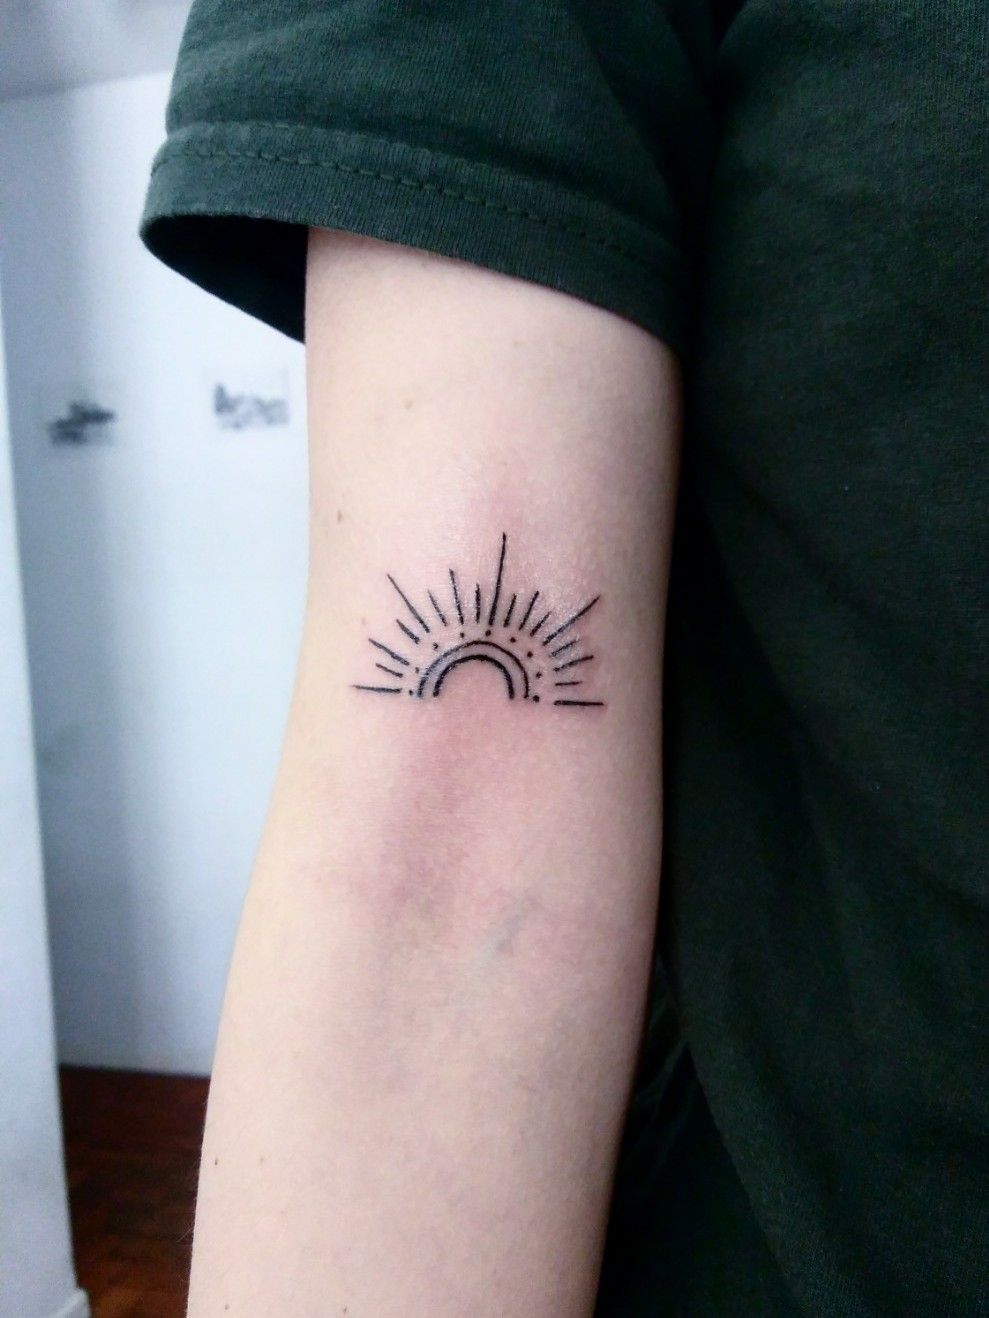 23 Sizzling Sun Tattoo Ideas  Designs  TattooGlee  Sun tattoos Sun  tattoo designs Sun tattoo small